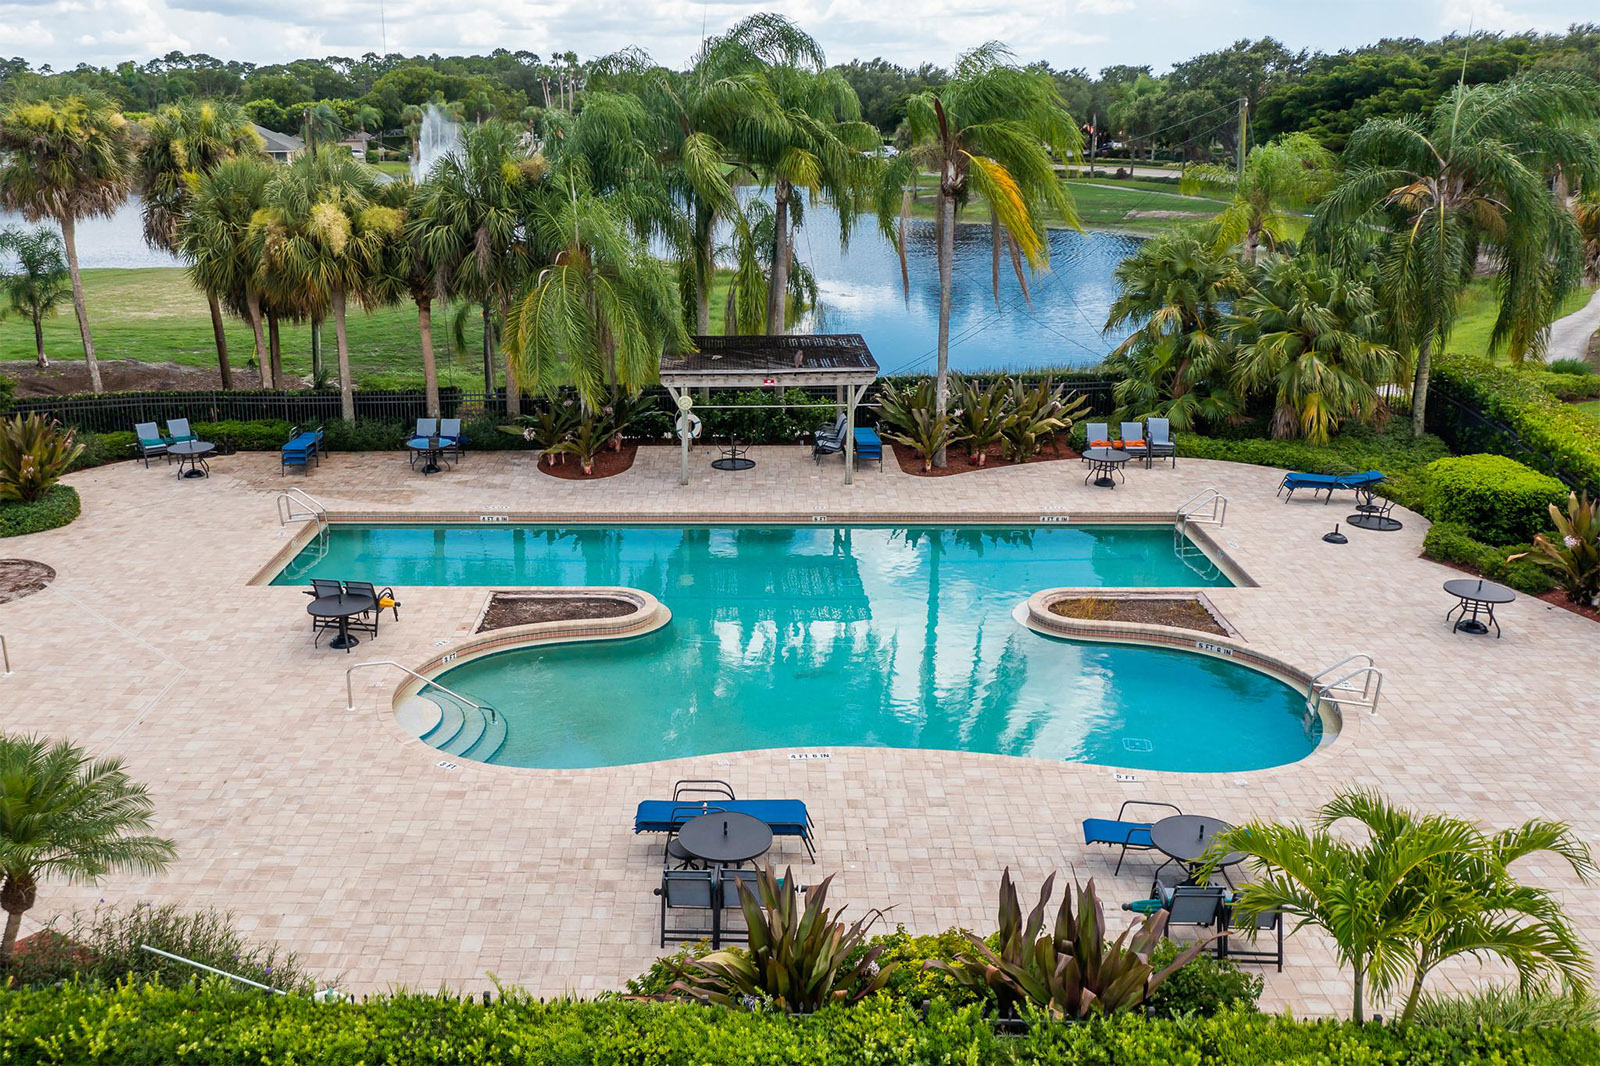 Pool in Bonita Springs, Florida